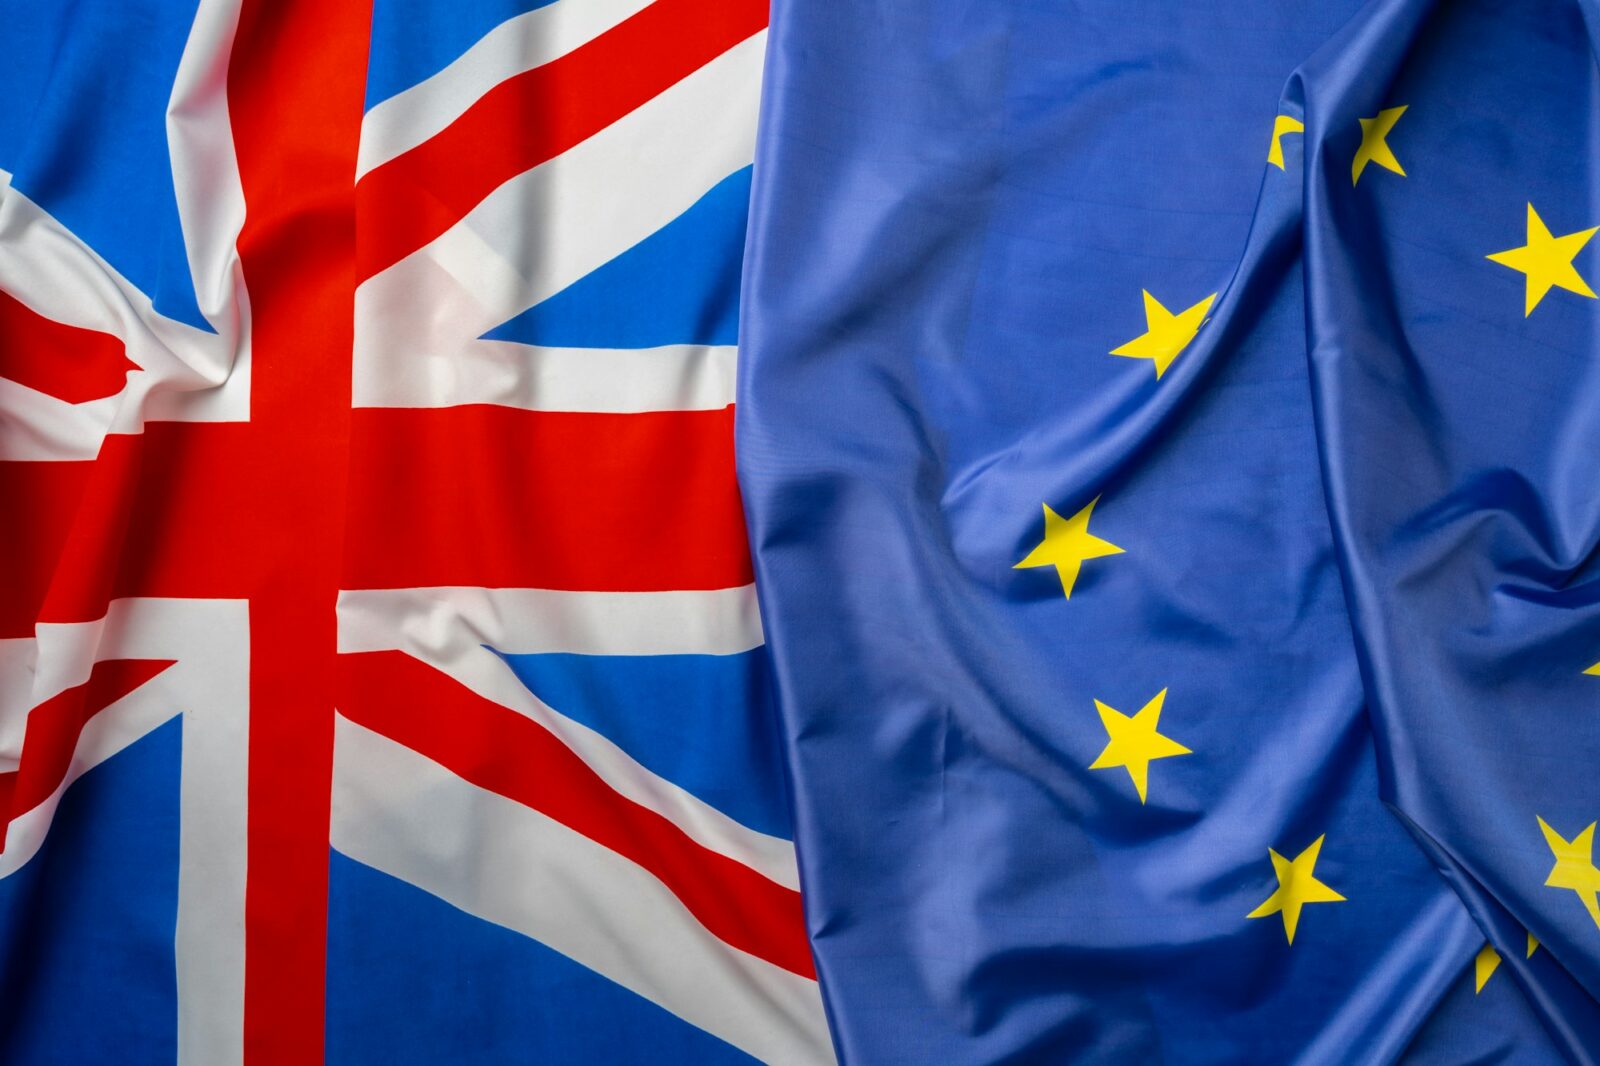 Bandeiras do Reino Unido e da União Europeia dobradas juntas